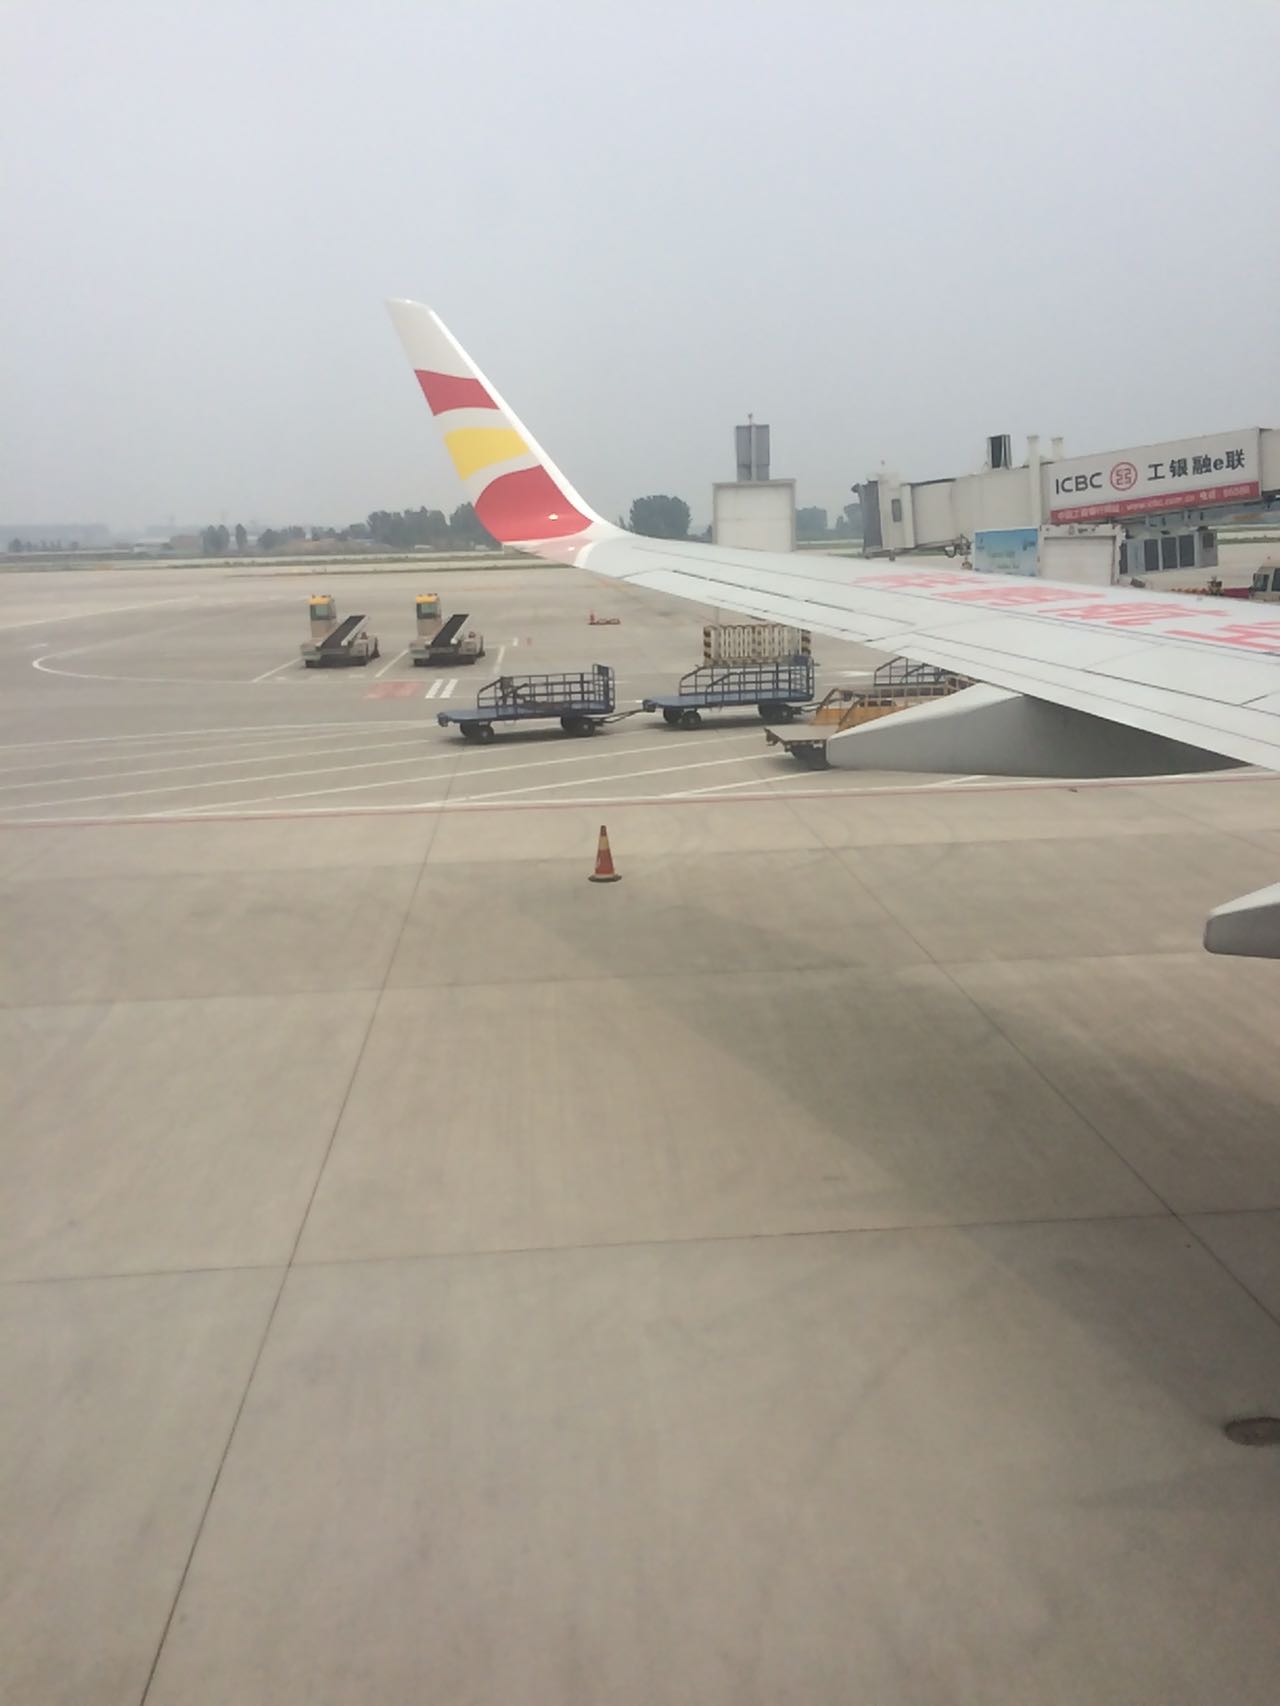 兩大機場共同注入上市公司 上海機場重組落定